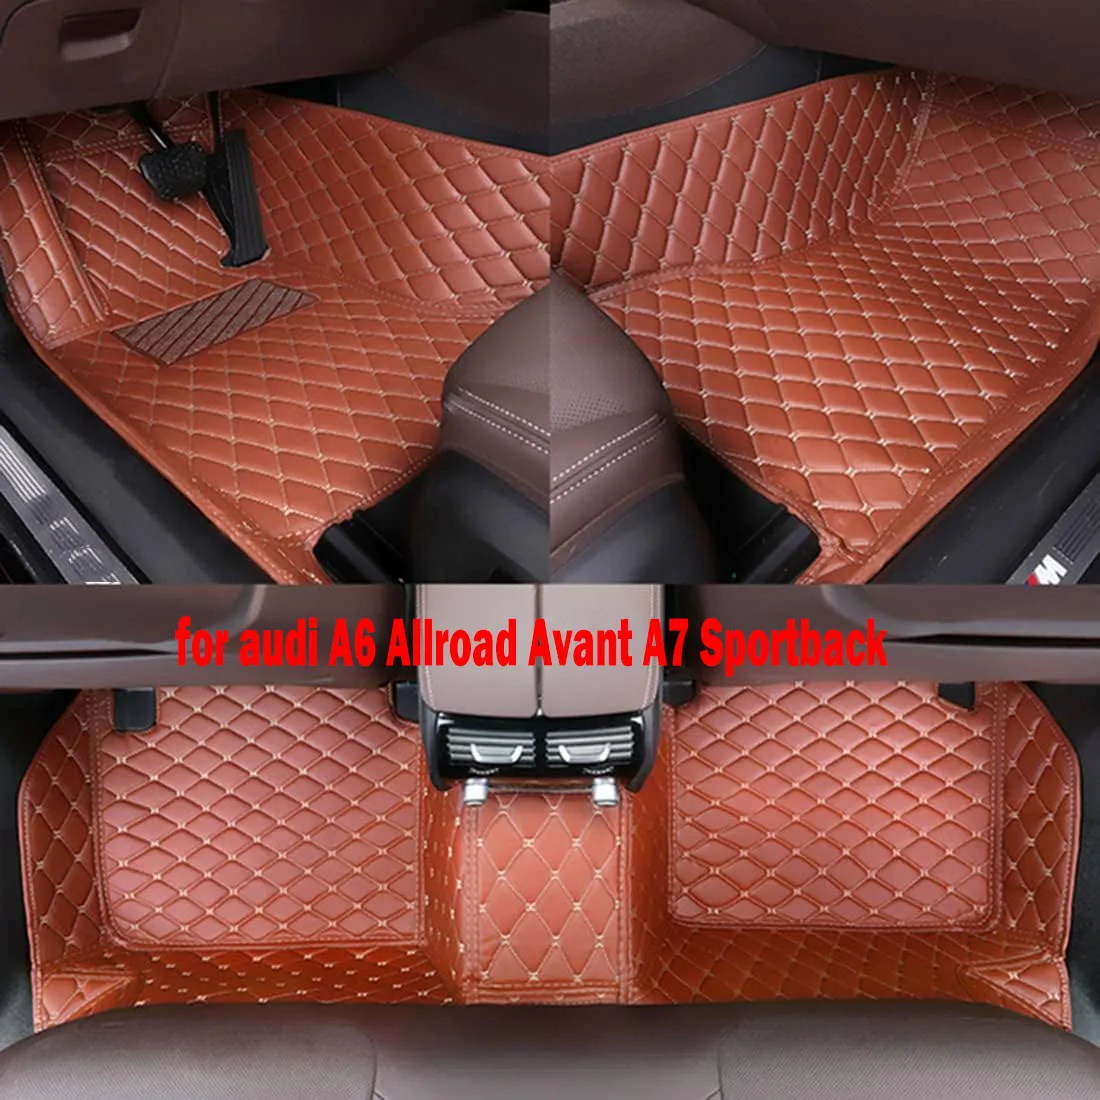 

CRLCRT высококачественные кожаные автомобильные коврики для audi A6 Allroad Avant A7 Sportback A1 A2 A3 A4 A8 Q2 Q3 Q5 Q7 автомобильные аксессуары для автомобиля